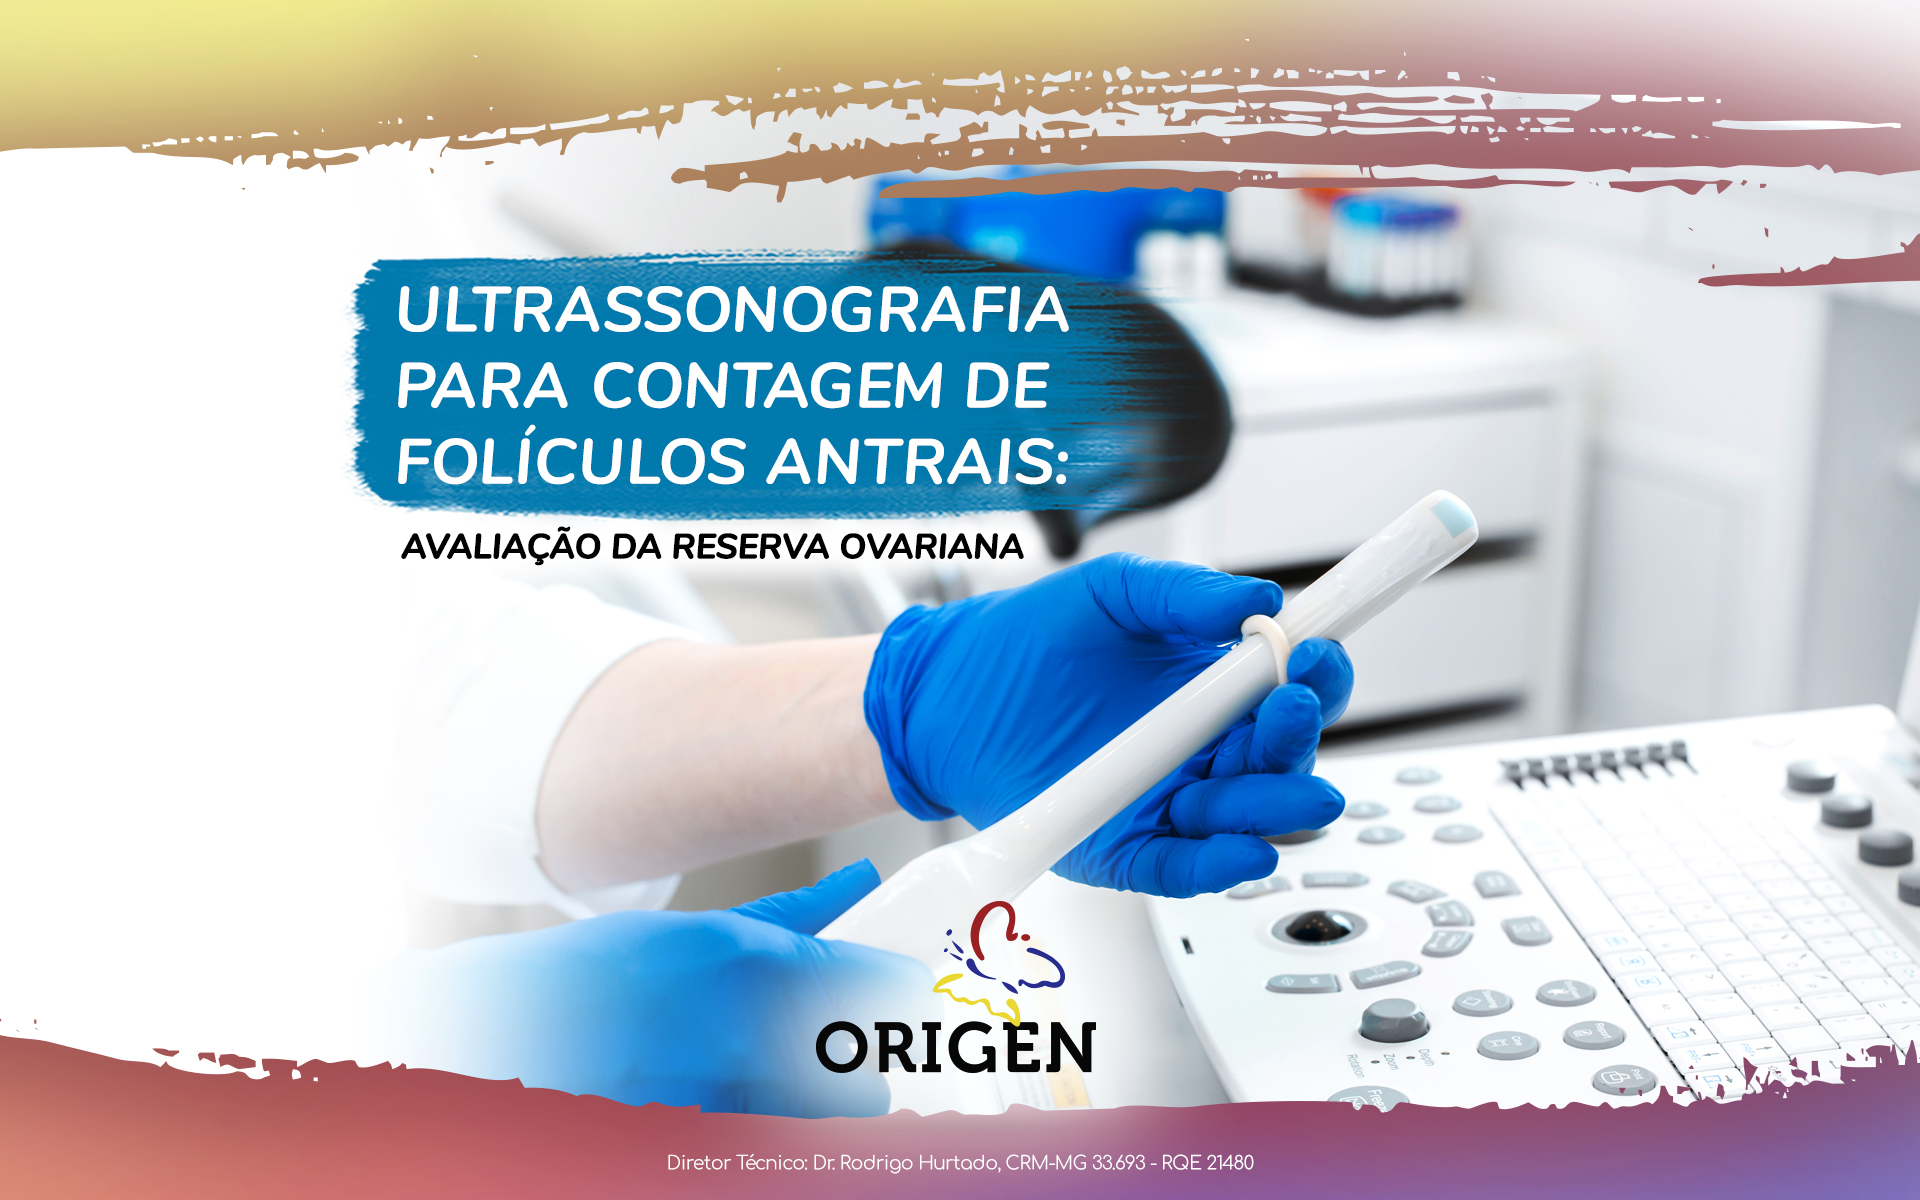 Ultrassonografia para contagem de folículos antrais: avaliação da reserva ovariana